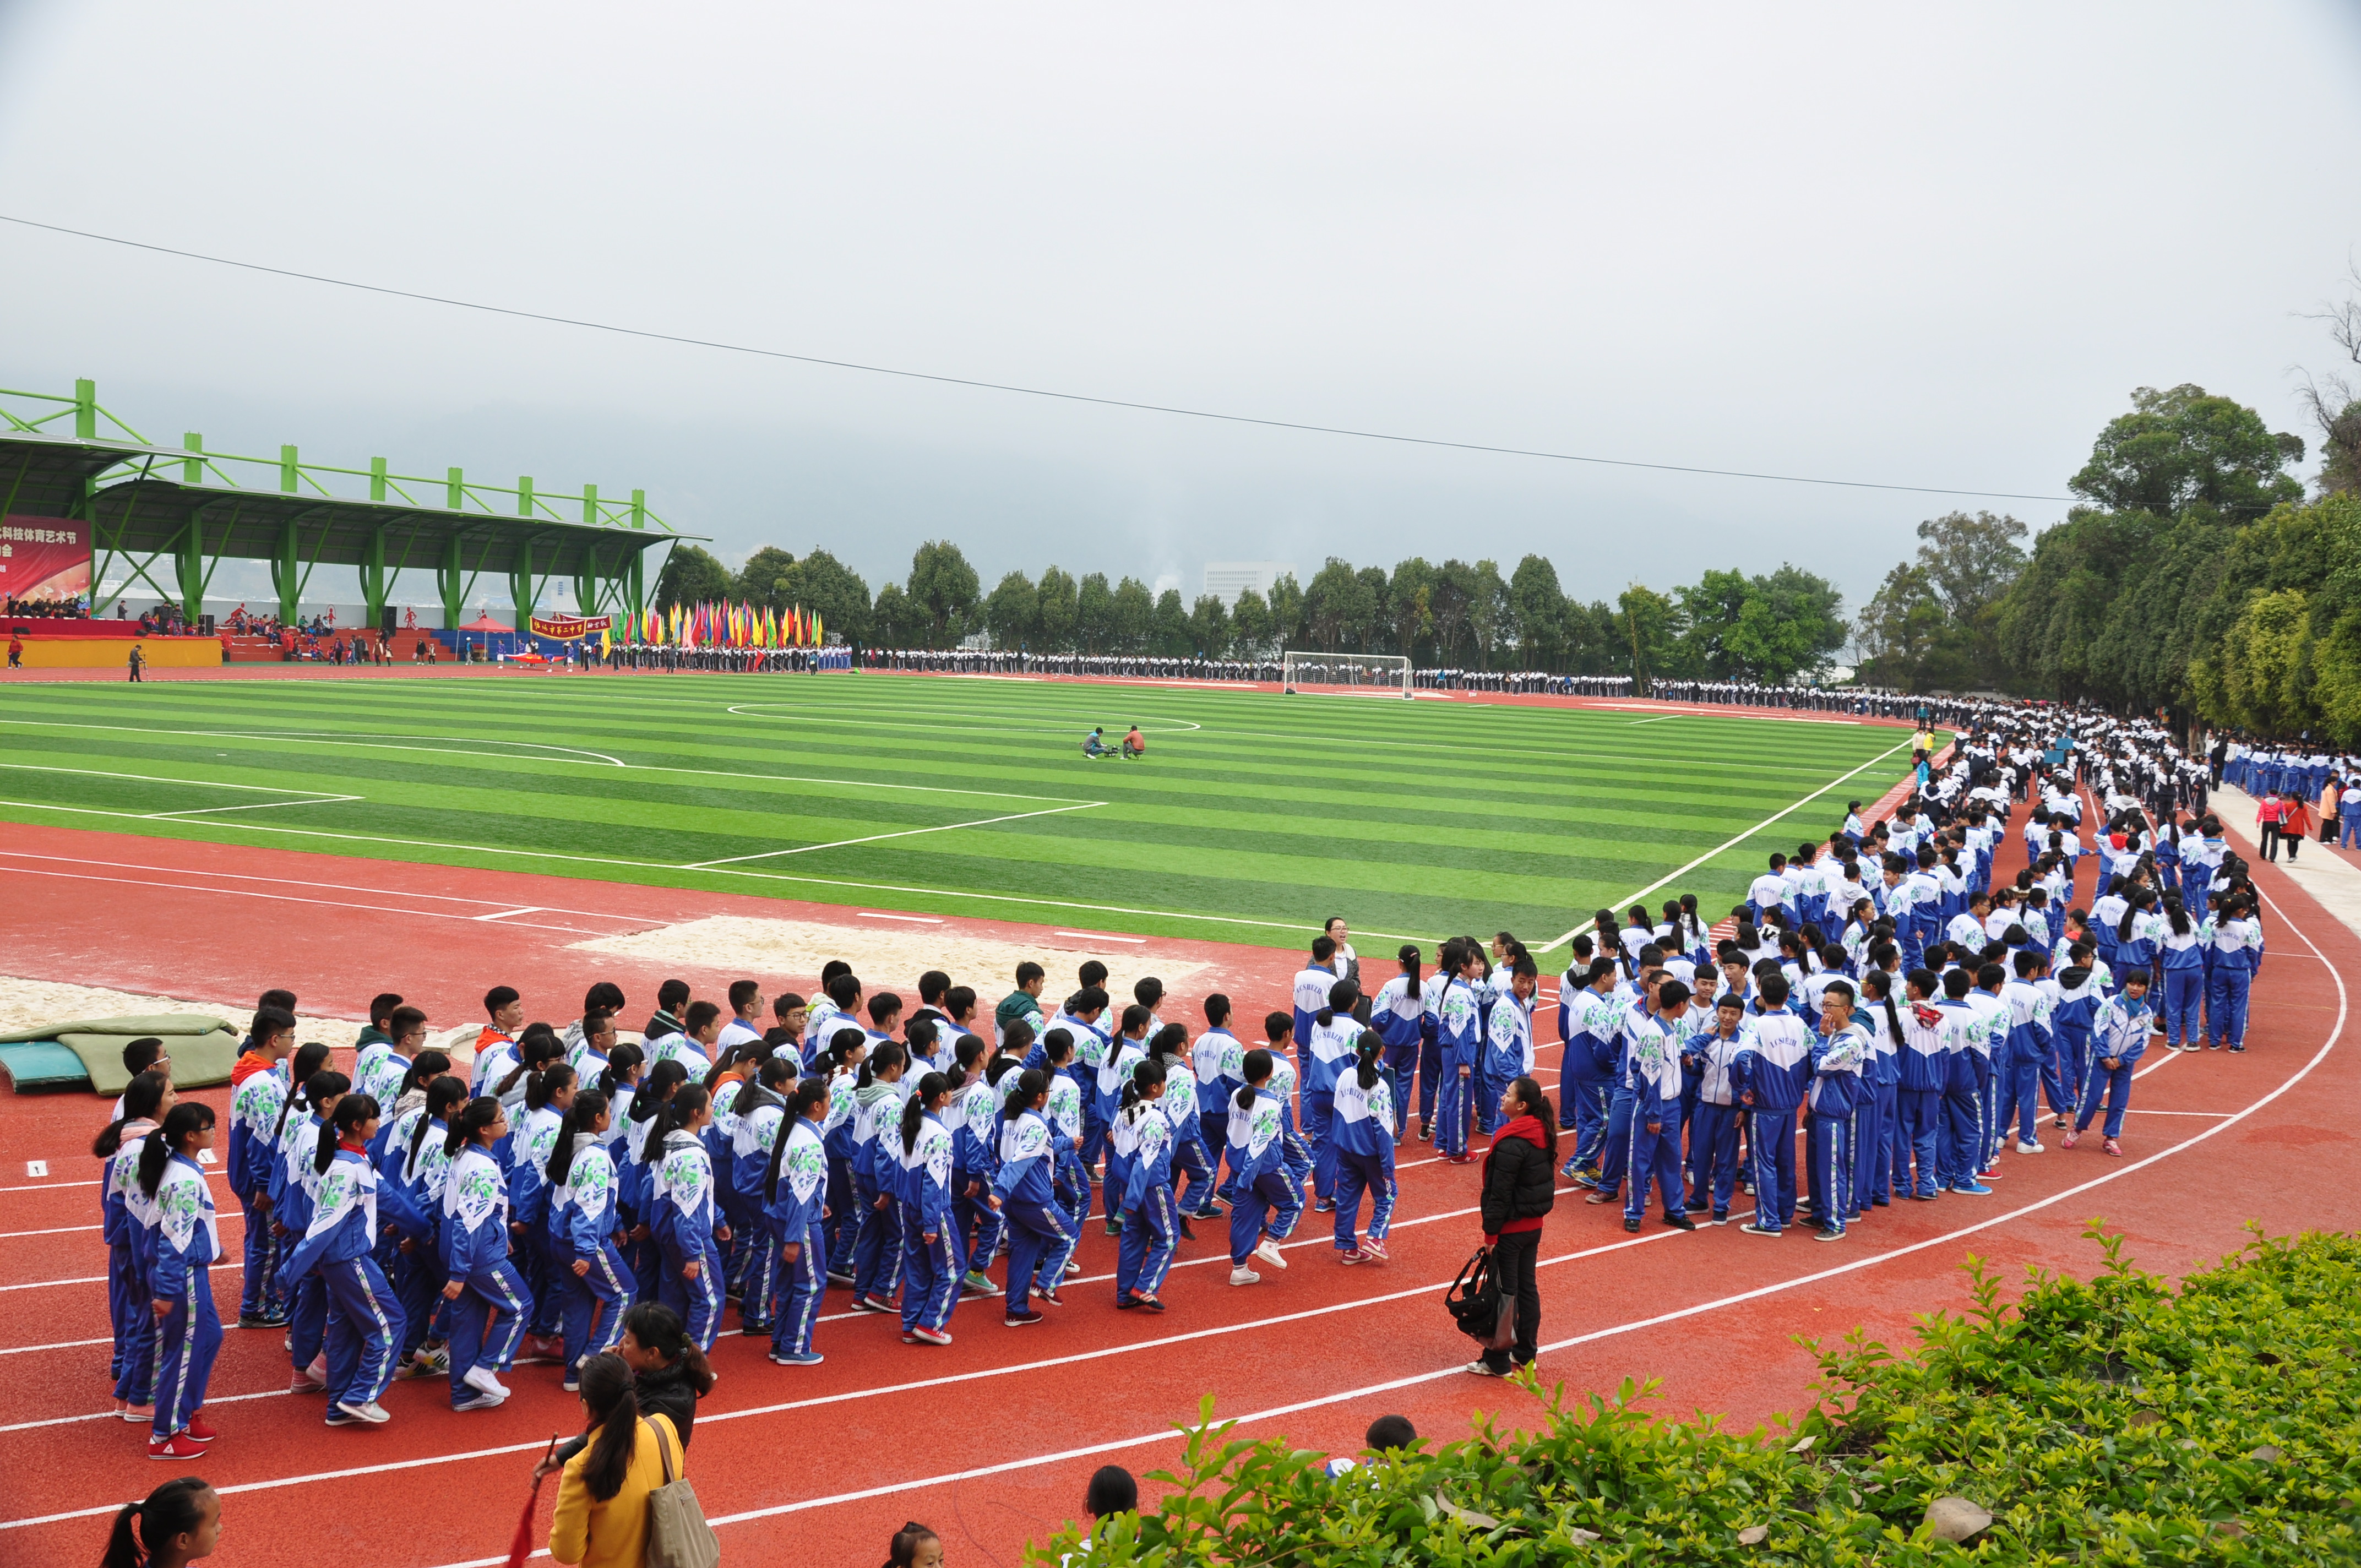 臨滄市第二中學